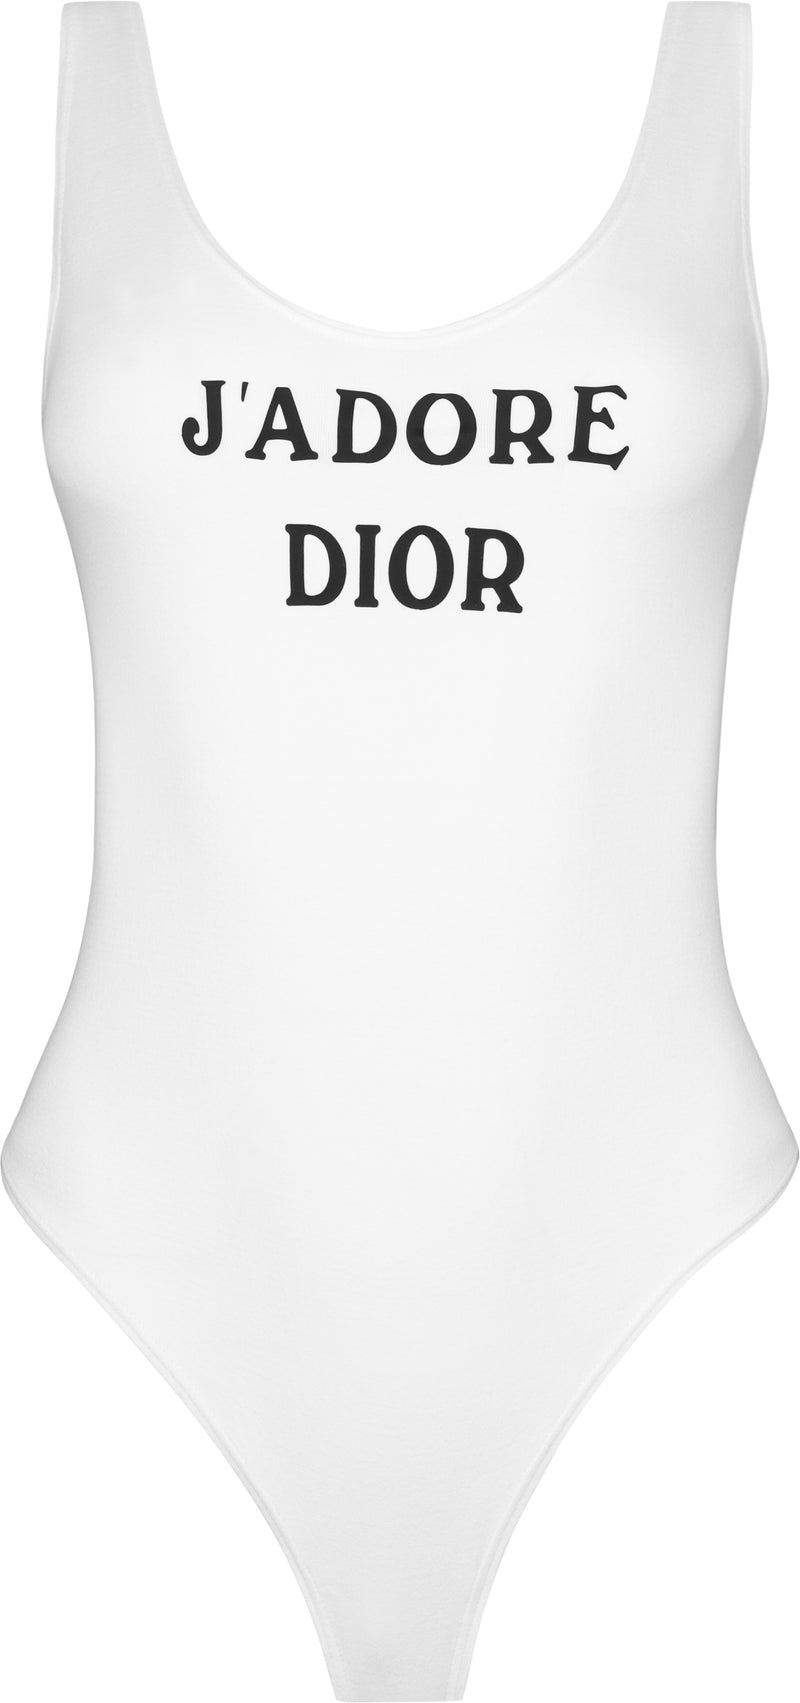 Christian Dior Logo Png Download  J Adore DiorDior Logo Png  free  transparent png images  pngaaacom